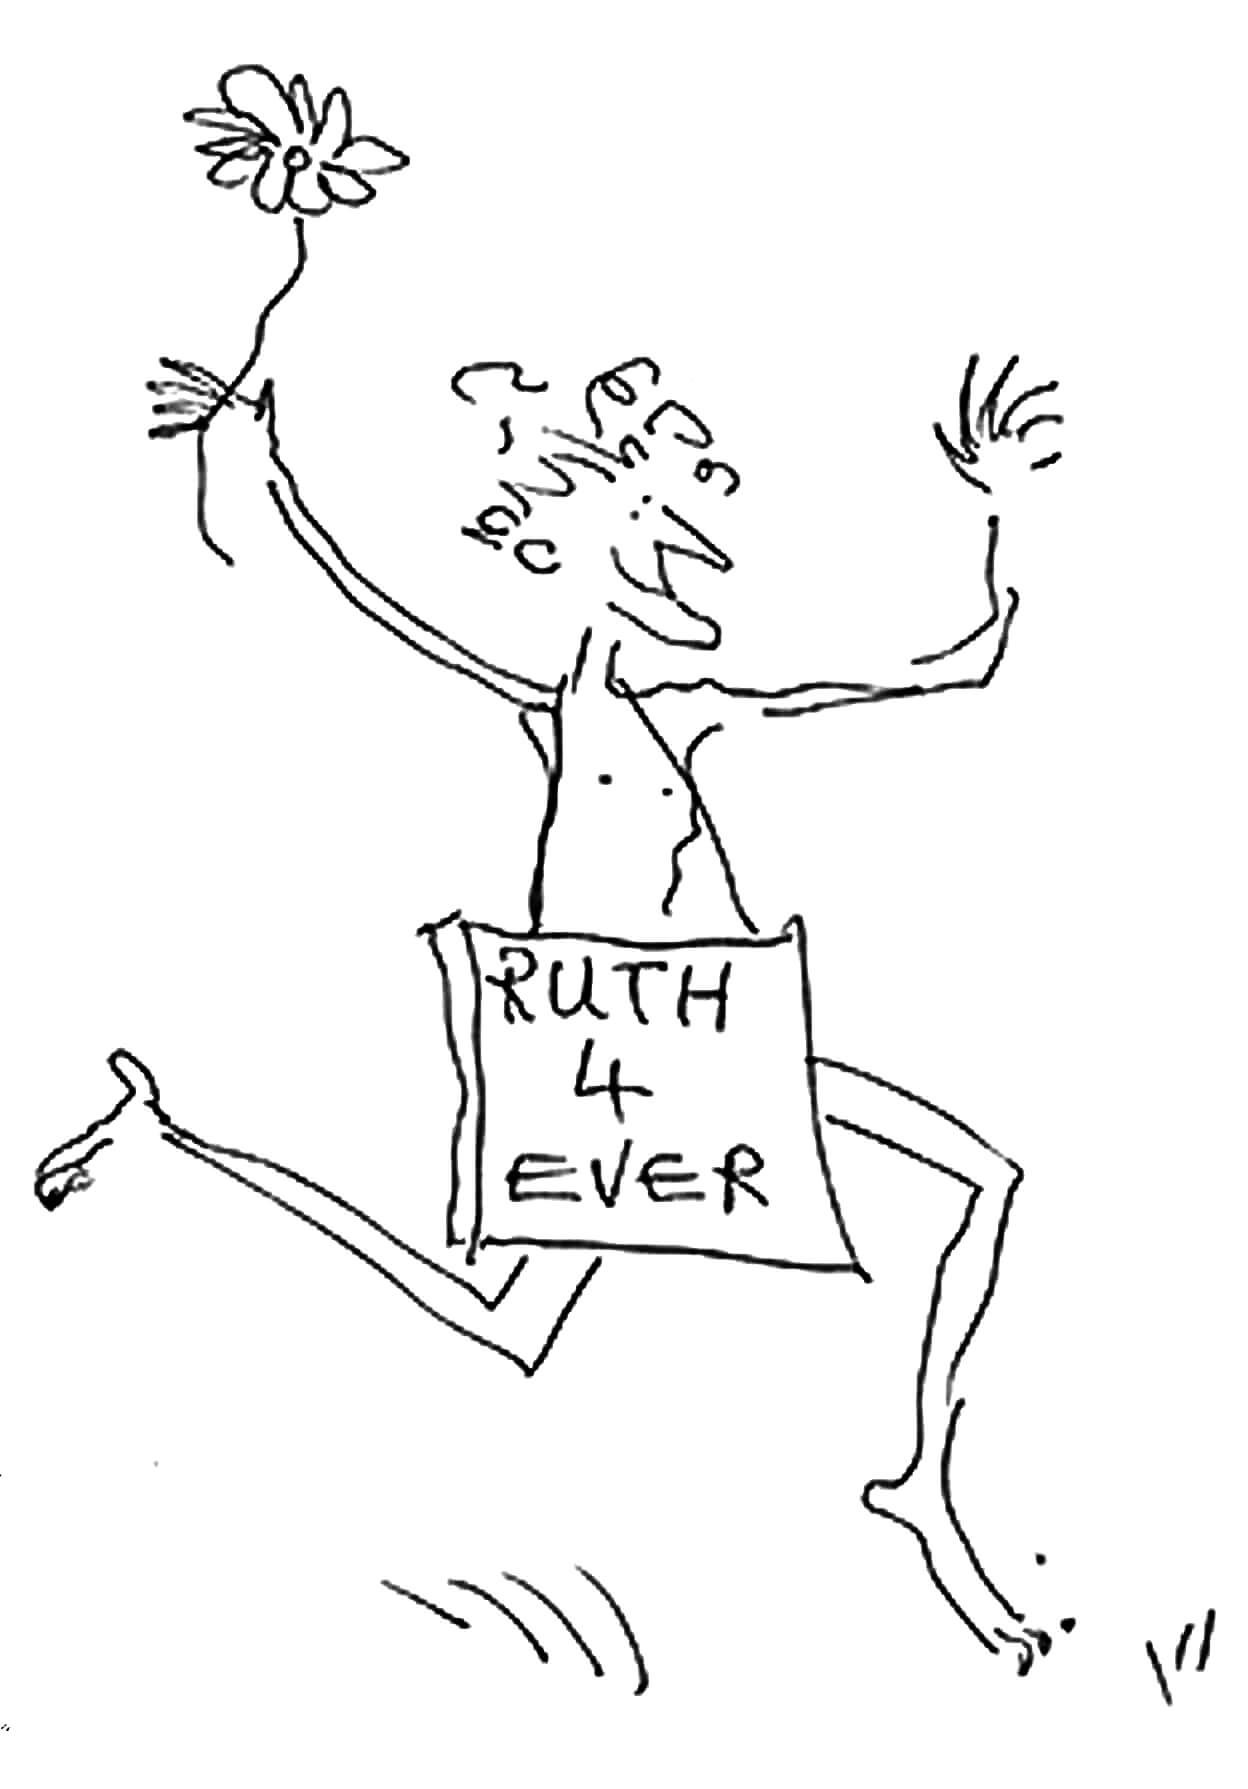 'Ruth for ever' cartoon